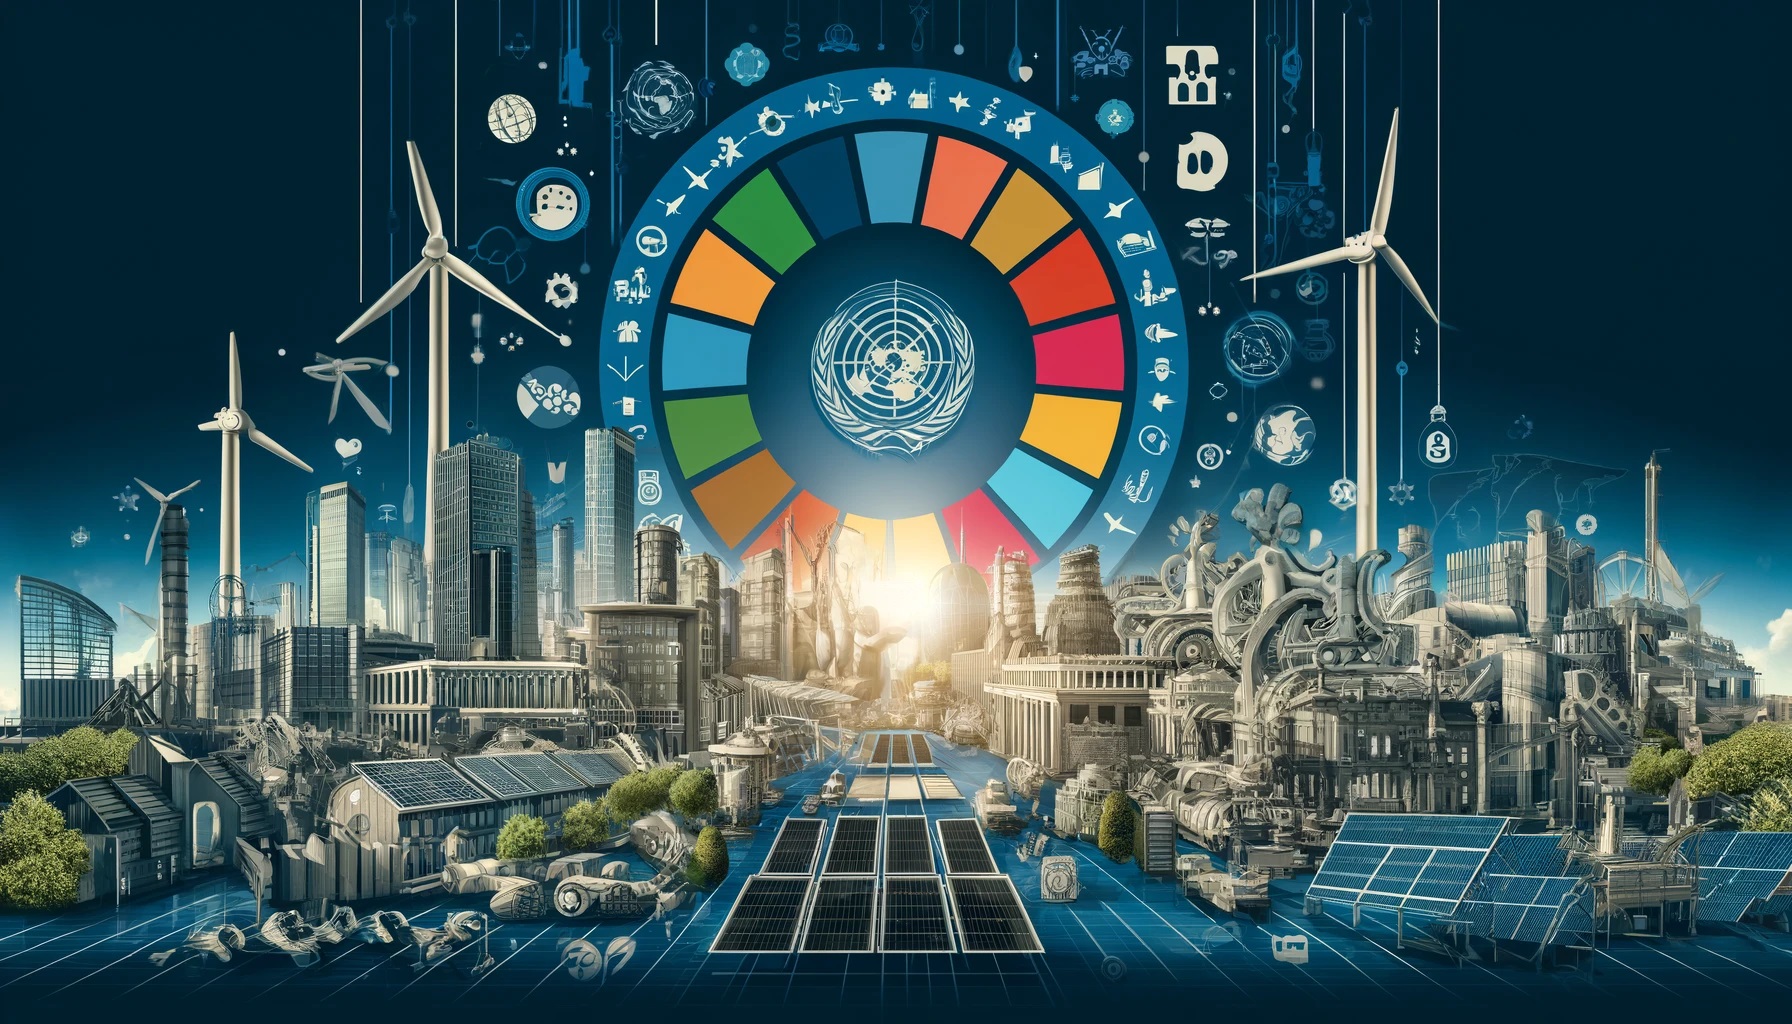 A imagem retrata elementos do desenvolvimento sustentável em Portugal. No centro, há um círculo colorido representando os Objetivos de Desenvolvimento Sustentável da ONU. Ao redor, há imagens e ícones visuais de indústria, inovação e infraestruturas, incluindo turbinas eólicas, painéis solares e edifícios modernos.